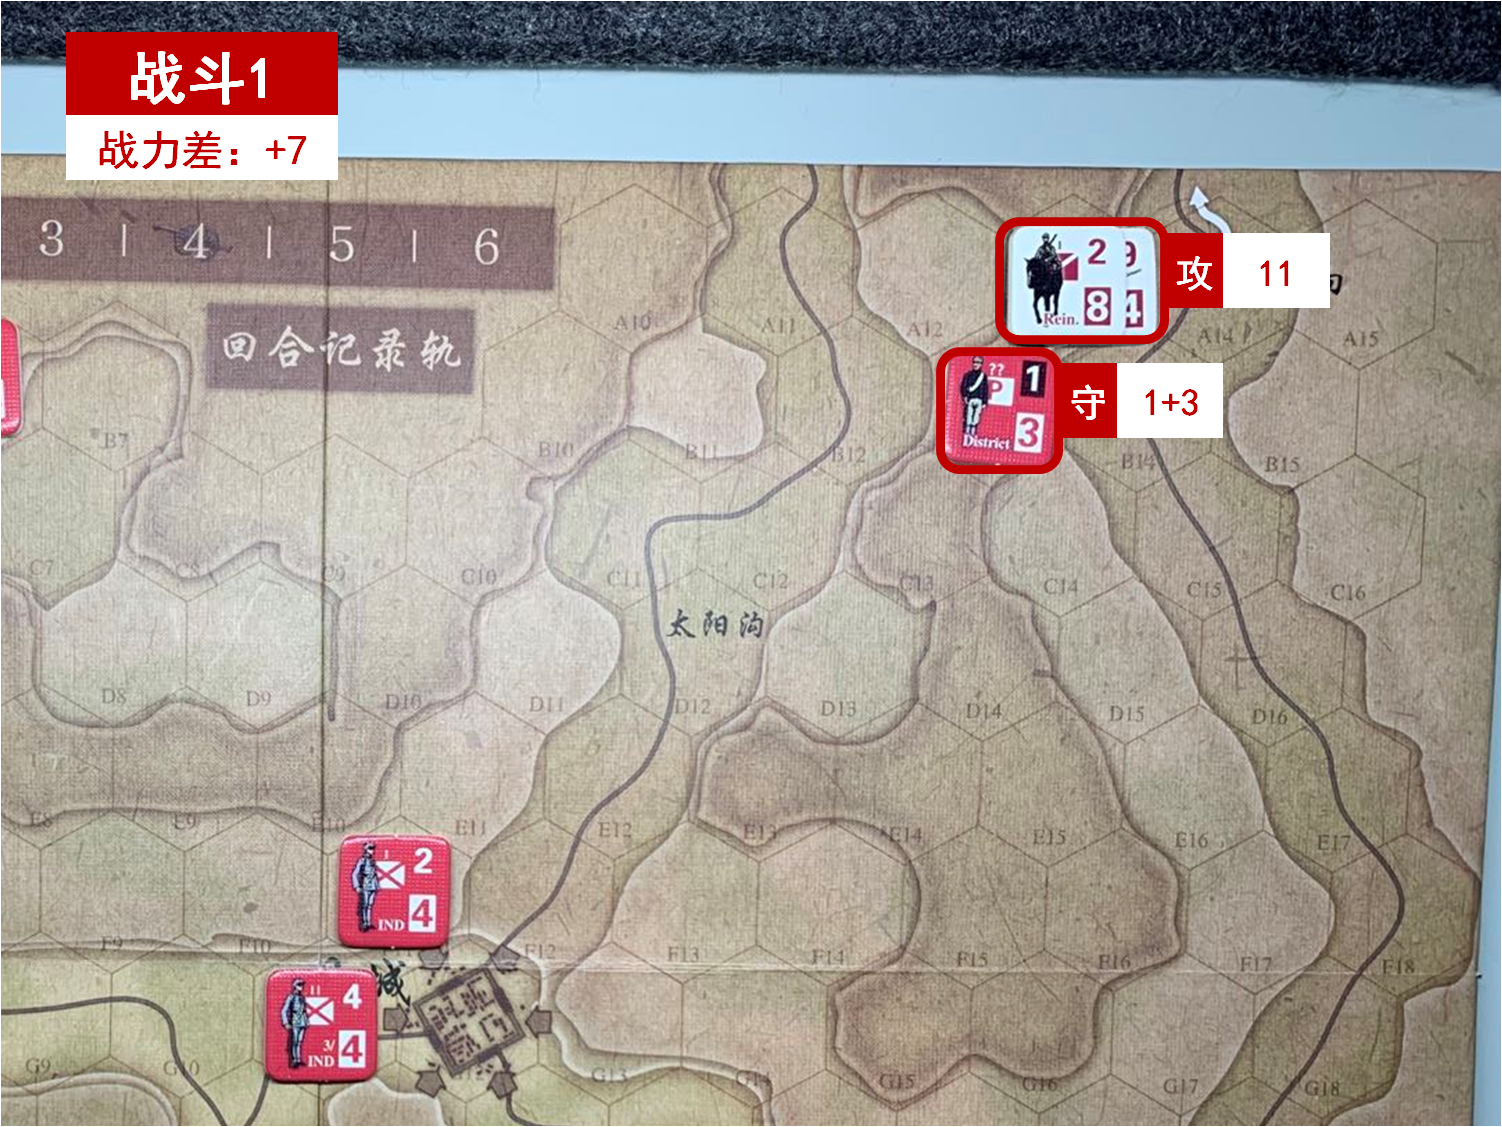 第二回合 日方战斗阶段 战斗1 战斗力差值